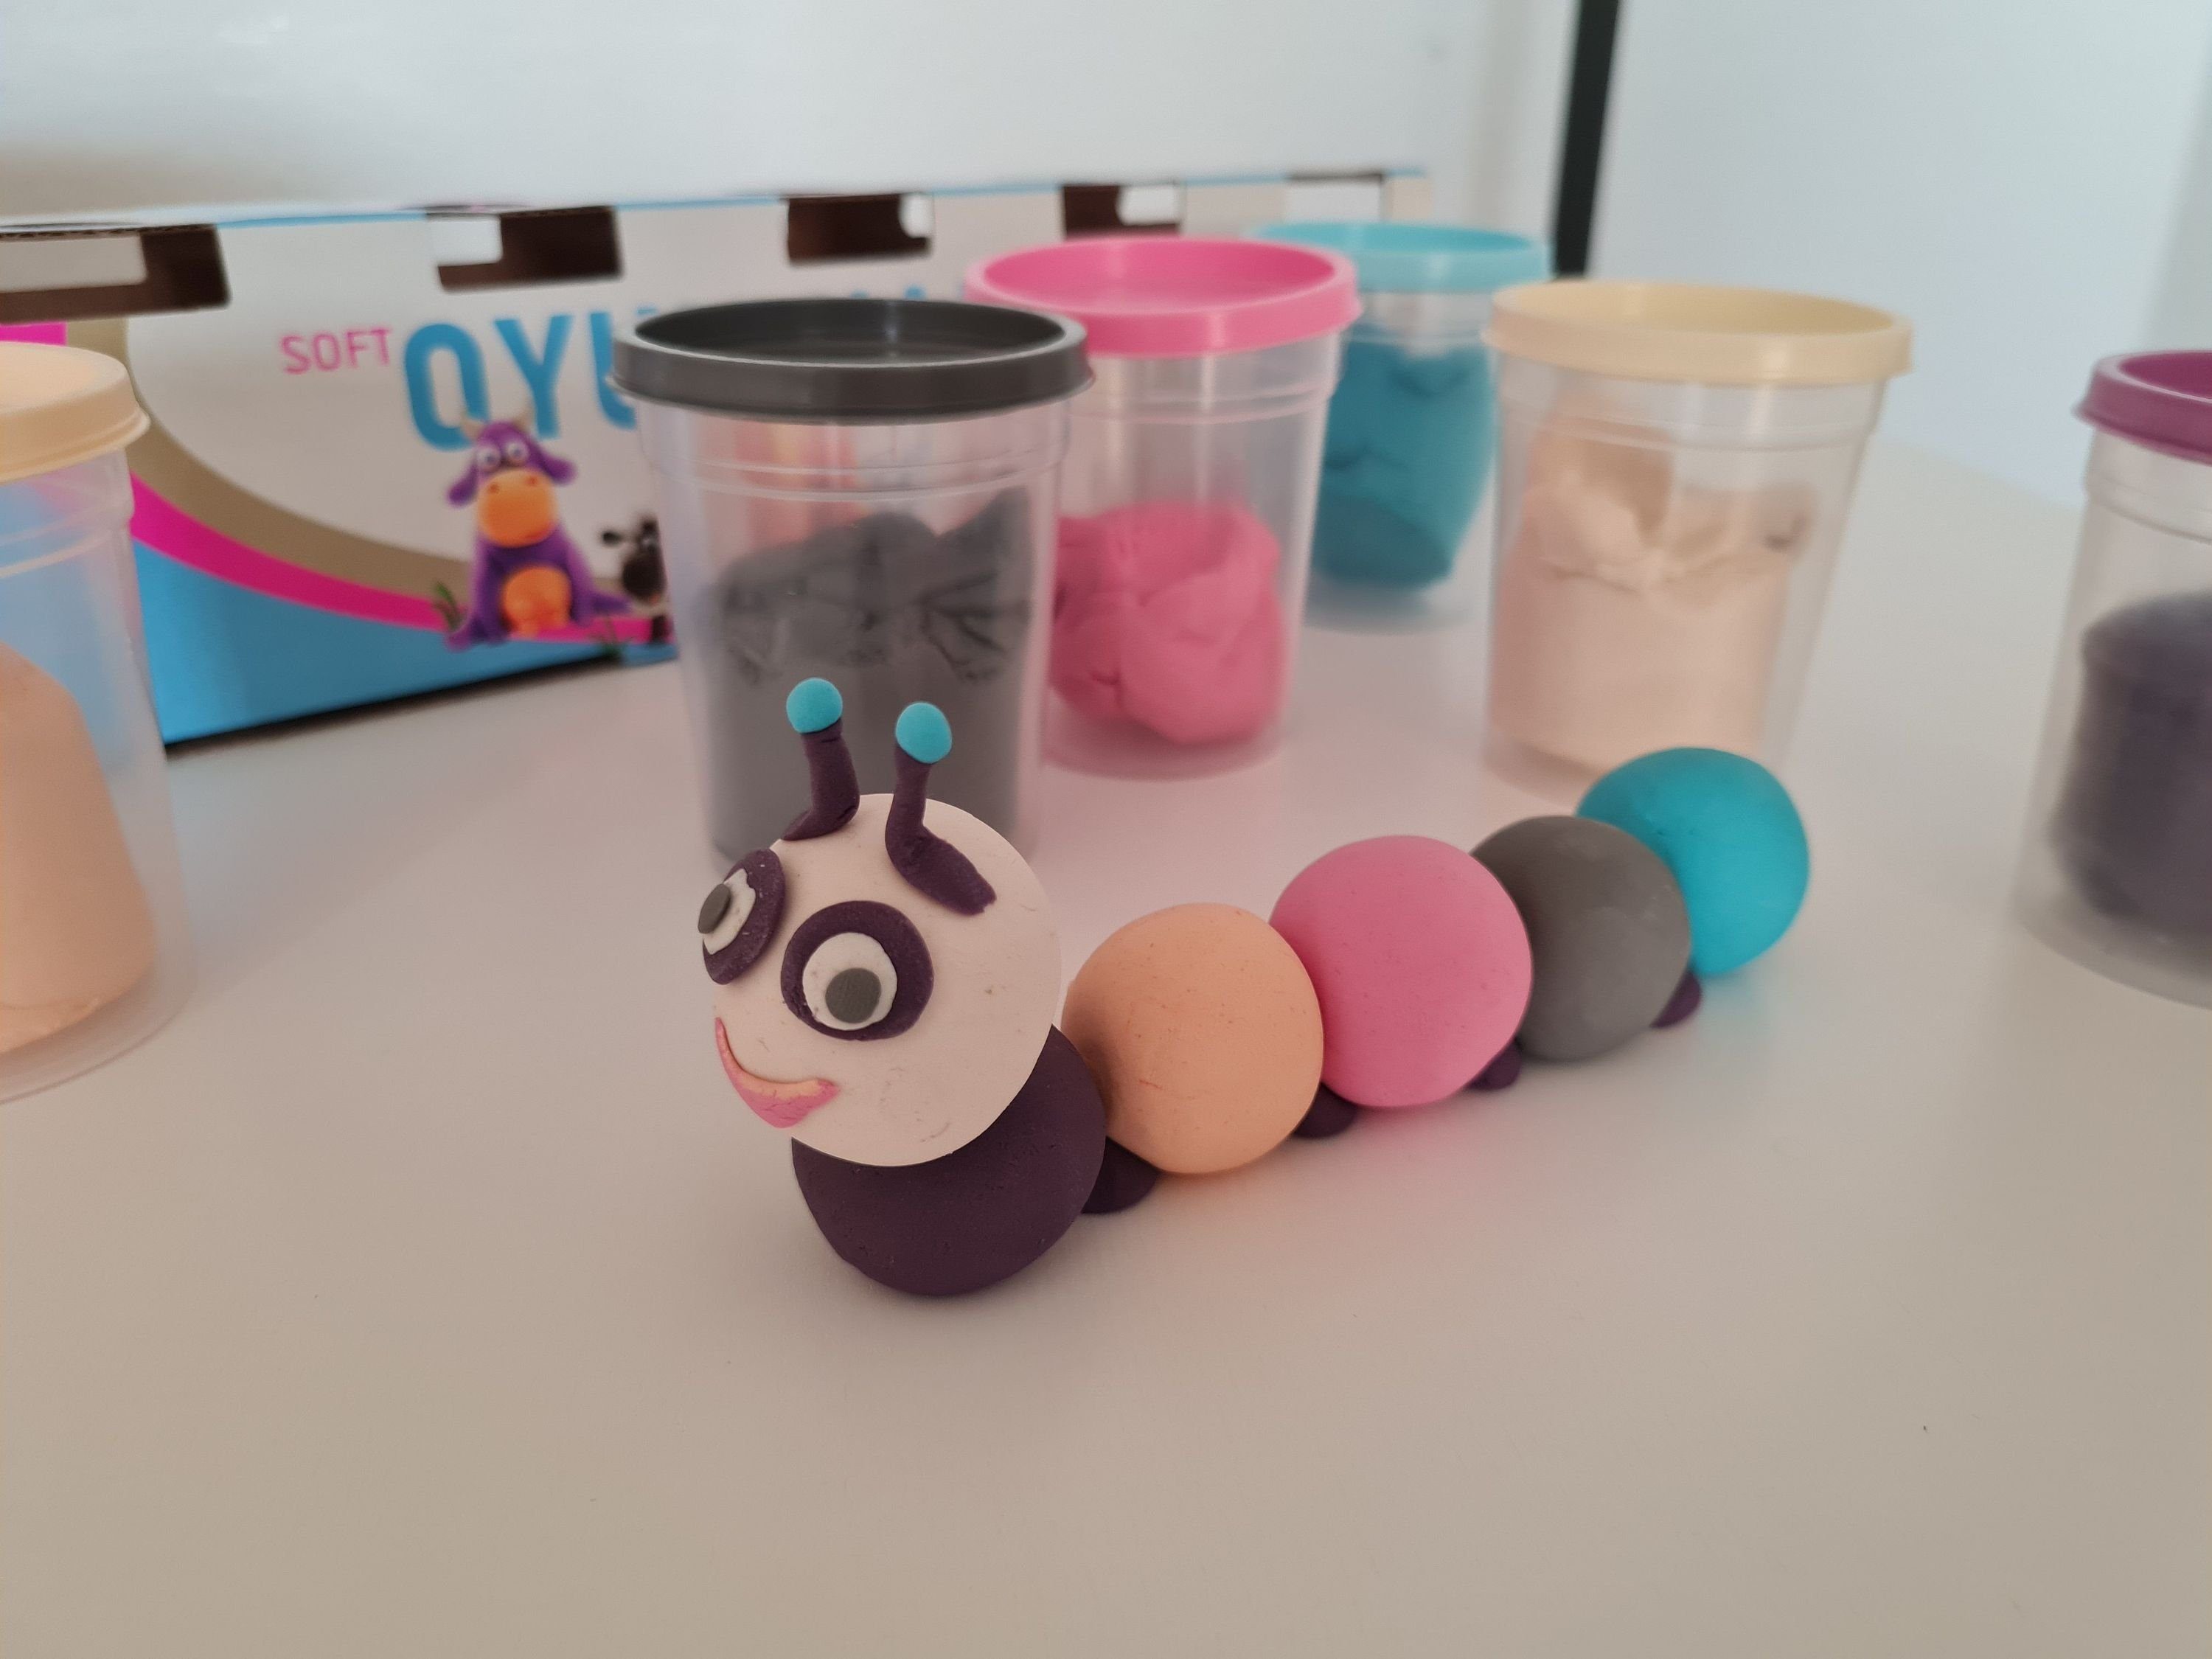 Monalisa Kreativset Spielknete Set, mit 6er-Pack Soft Knete